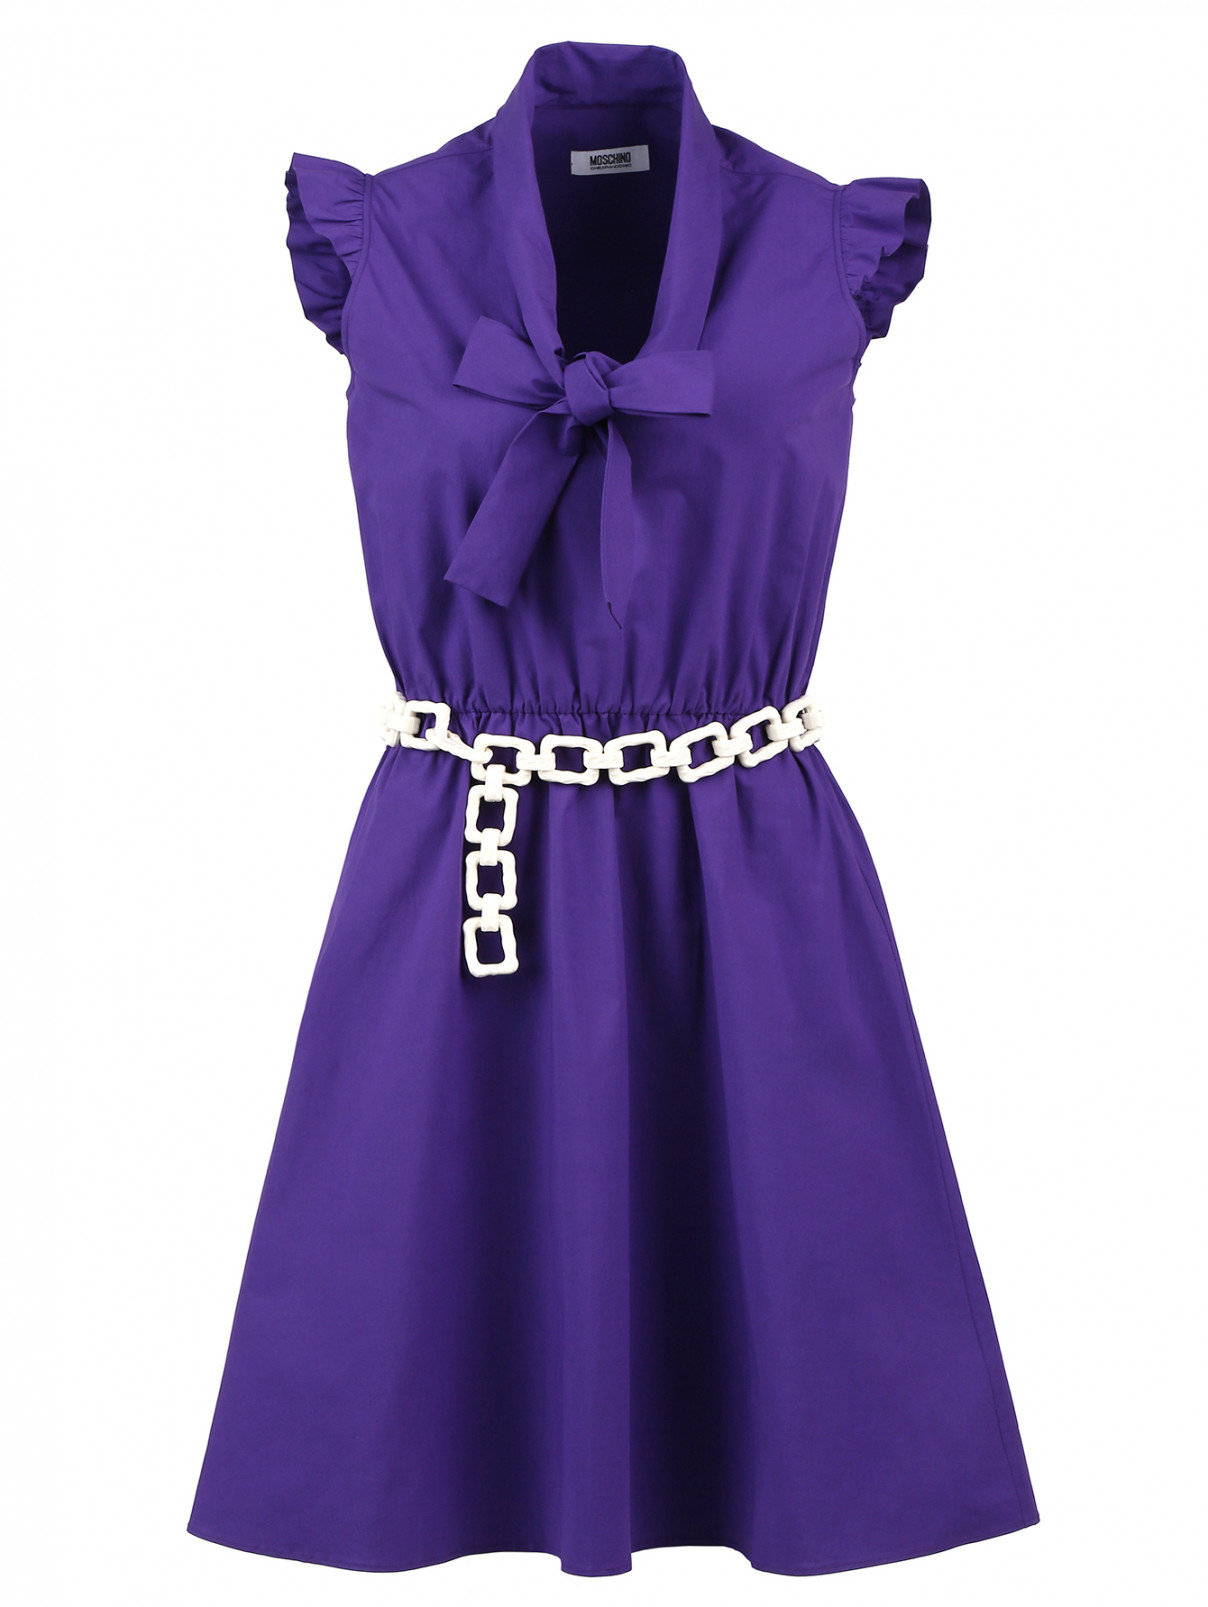 Платье с бантом и поясом Moschino Cheap&Chic  –  Общий вид  – Цвет:  Фиолетовый